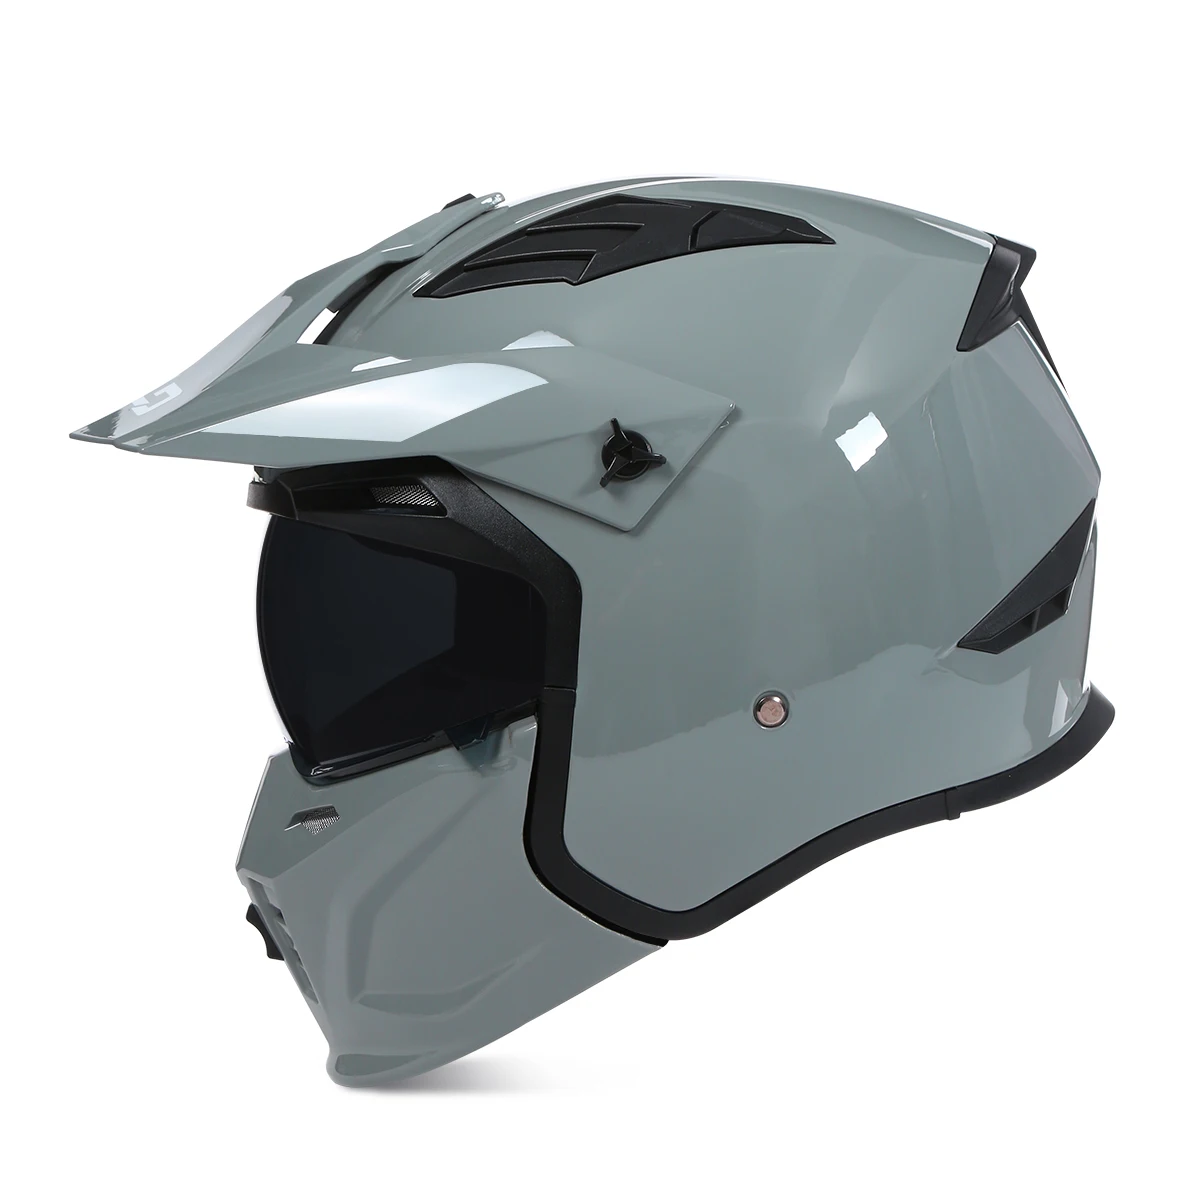 Мотоциклетный шлем с открытой модульной съемной маской на все лицо, Мотошлем, Сертификация ECE, Шлемы для мотокросса, Уличная мода